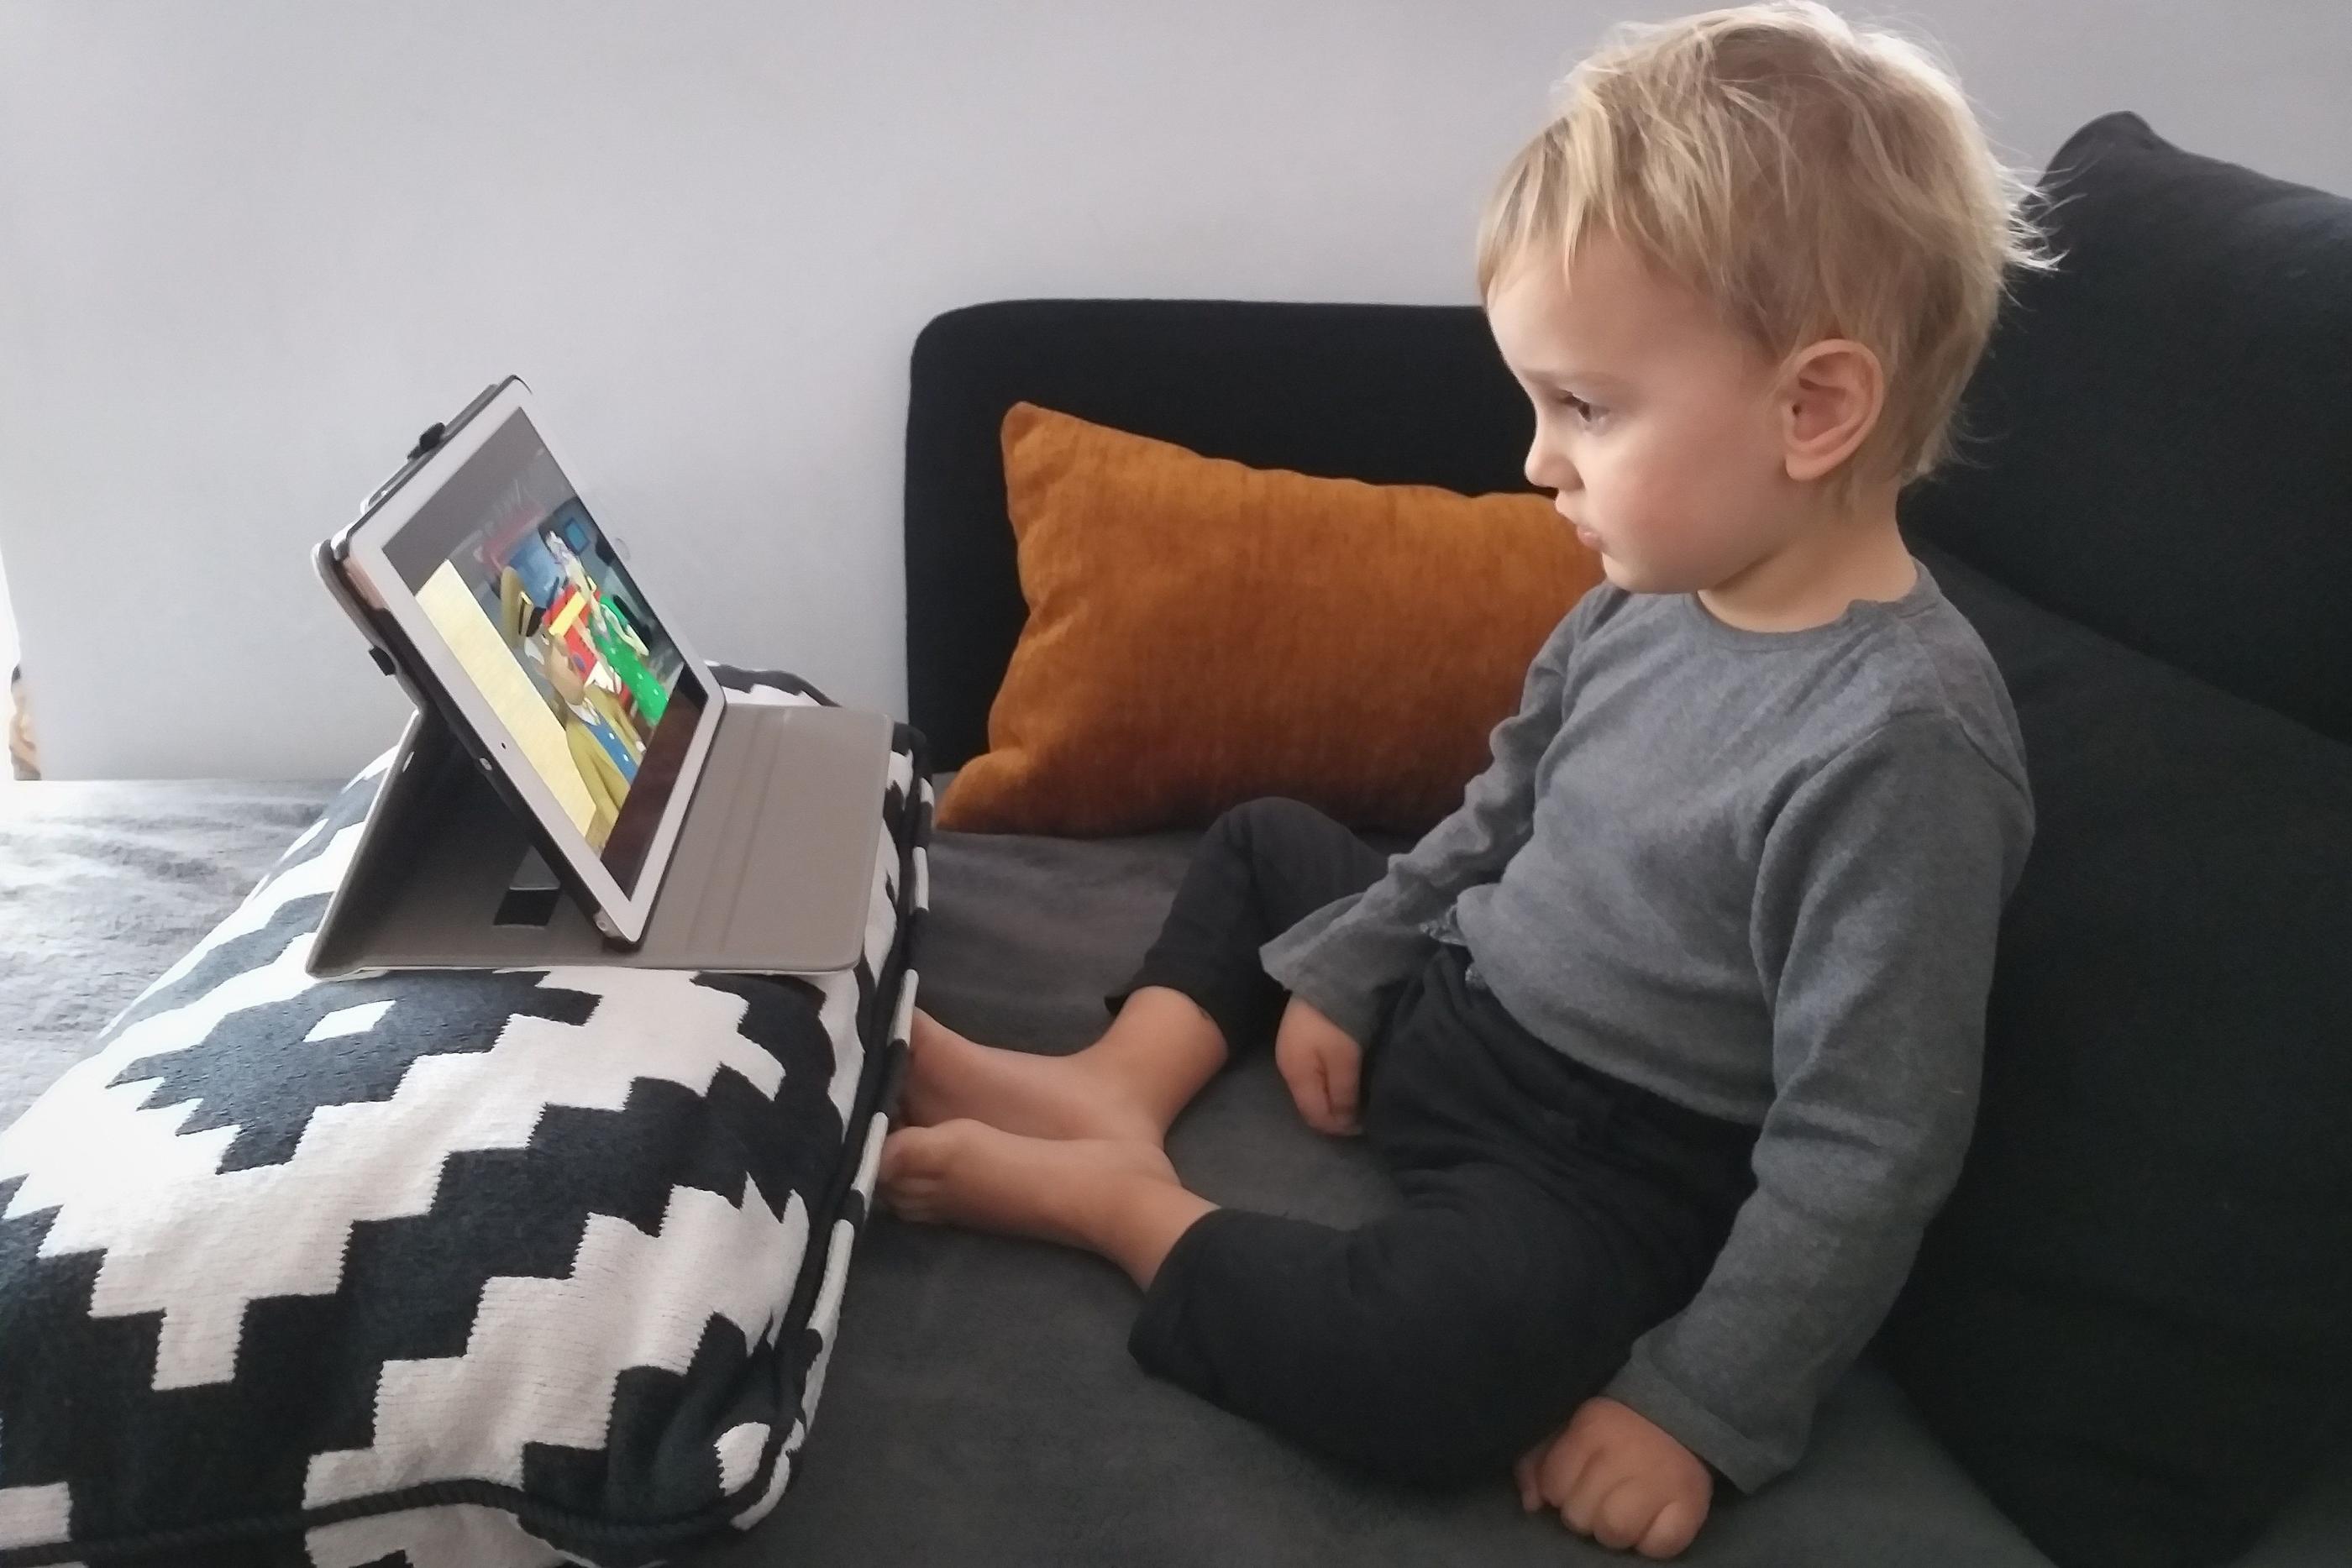 Dans leur rapport, les experts préconisent aucun accès aux écrans par des enfants de moins de 3 ans. (Illustration) LP/Frédéric Dugit